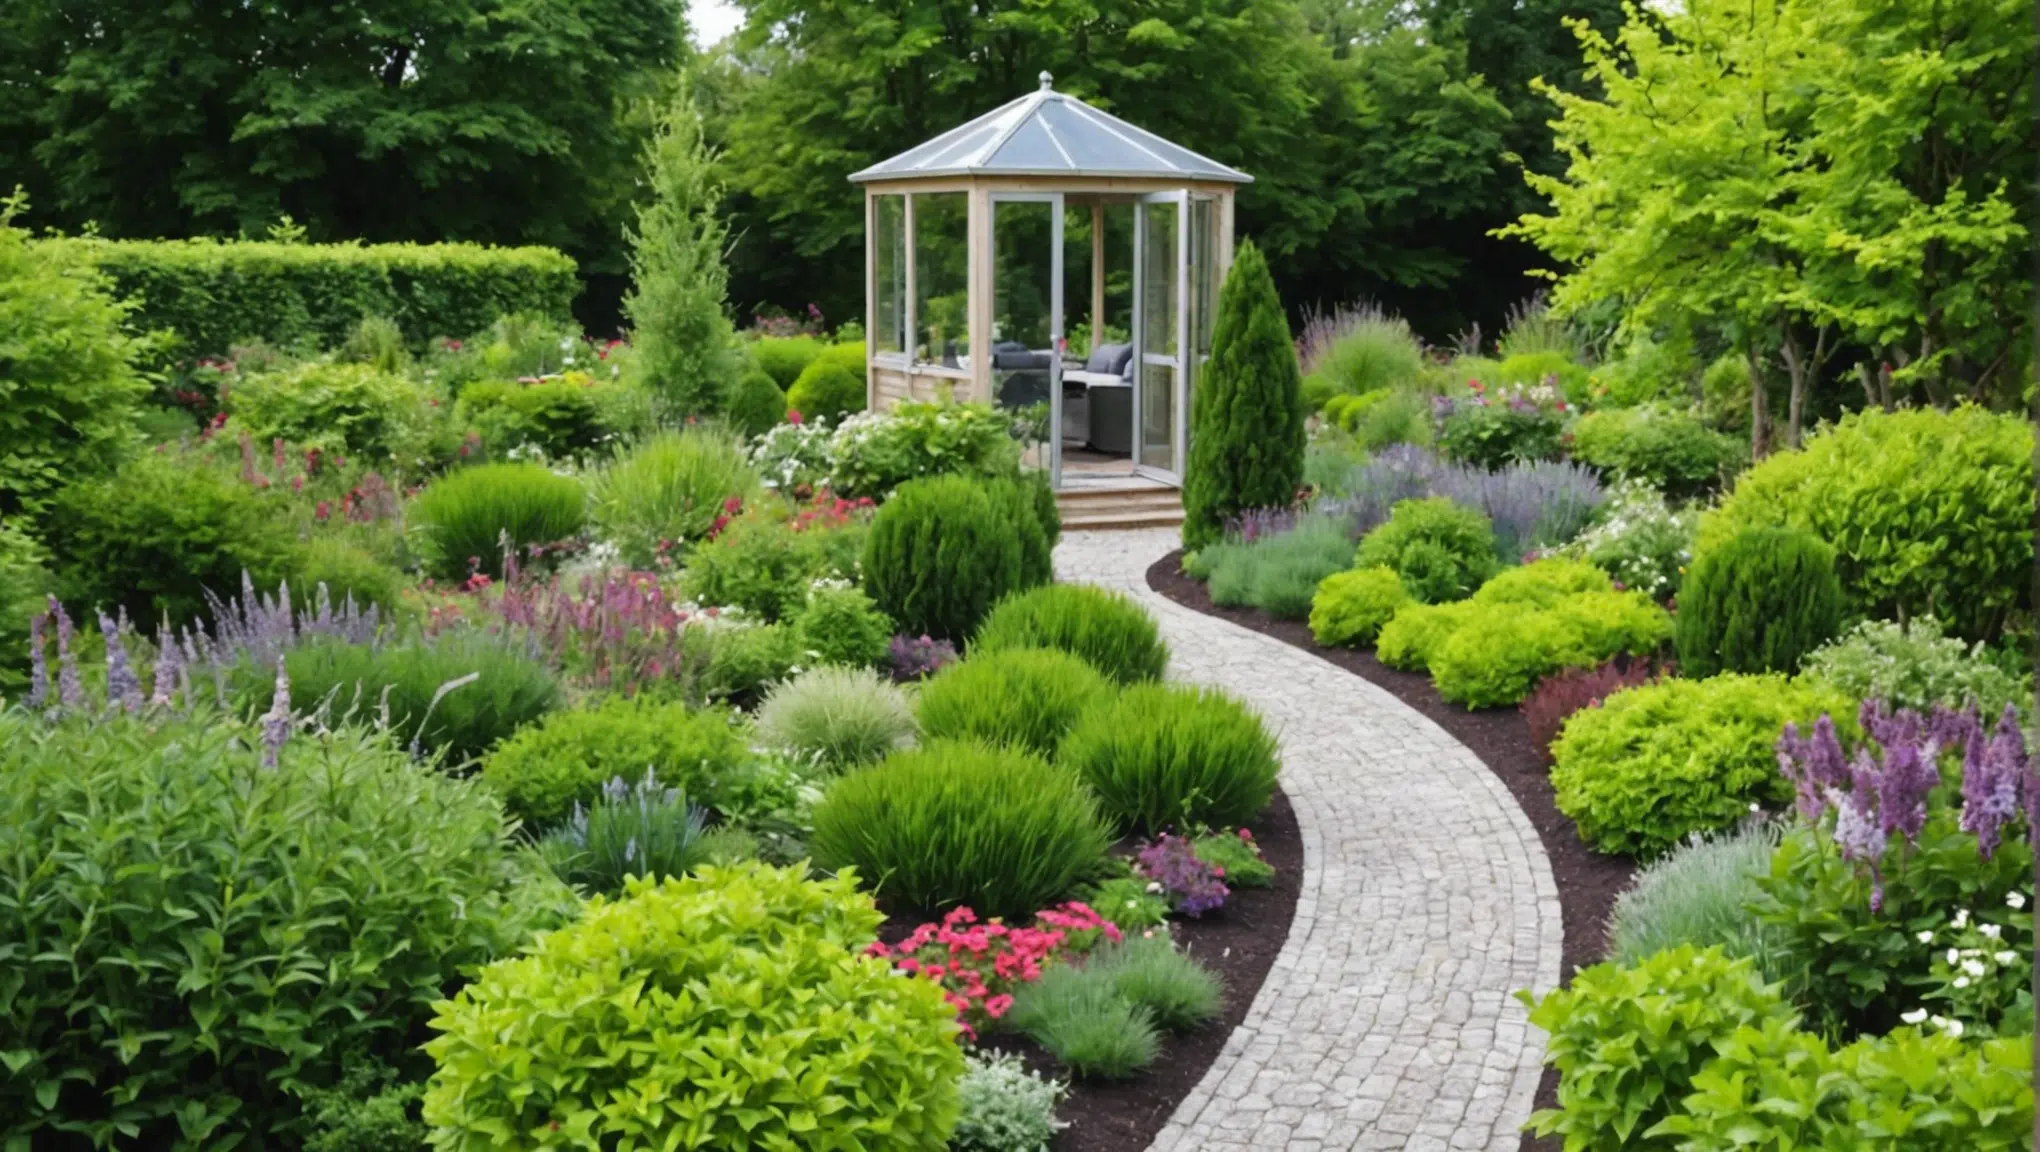 découvrez comment créer un jardin luxuriant sans utiliser le moindre produit chimique grâce à nos conseils écologiques et respectueux de l'environnement.